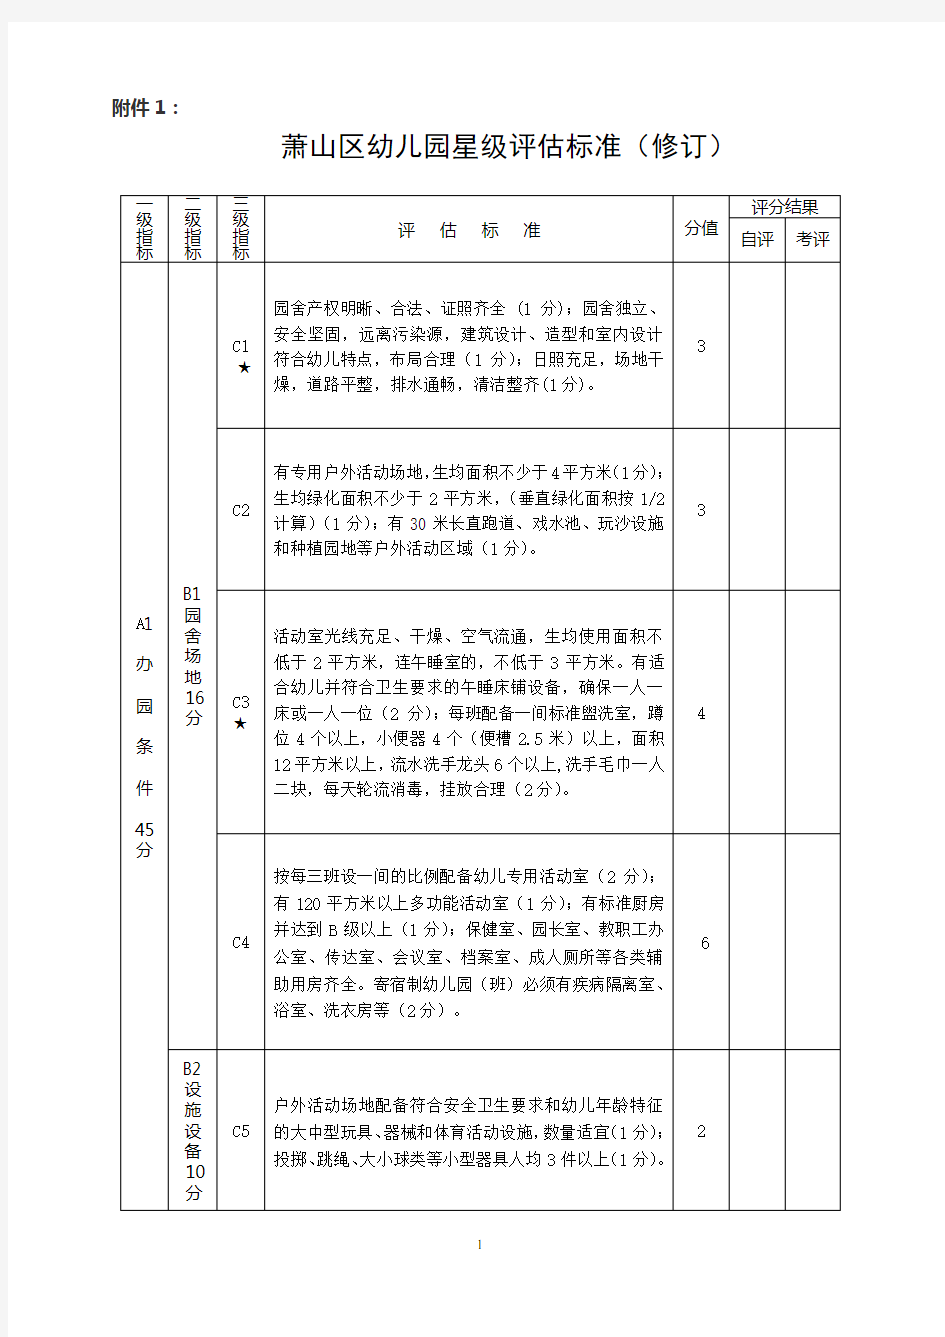 (一)浙江省幼儿园等级评估指标体系